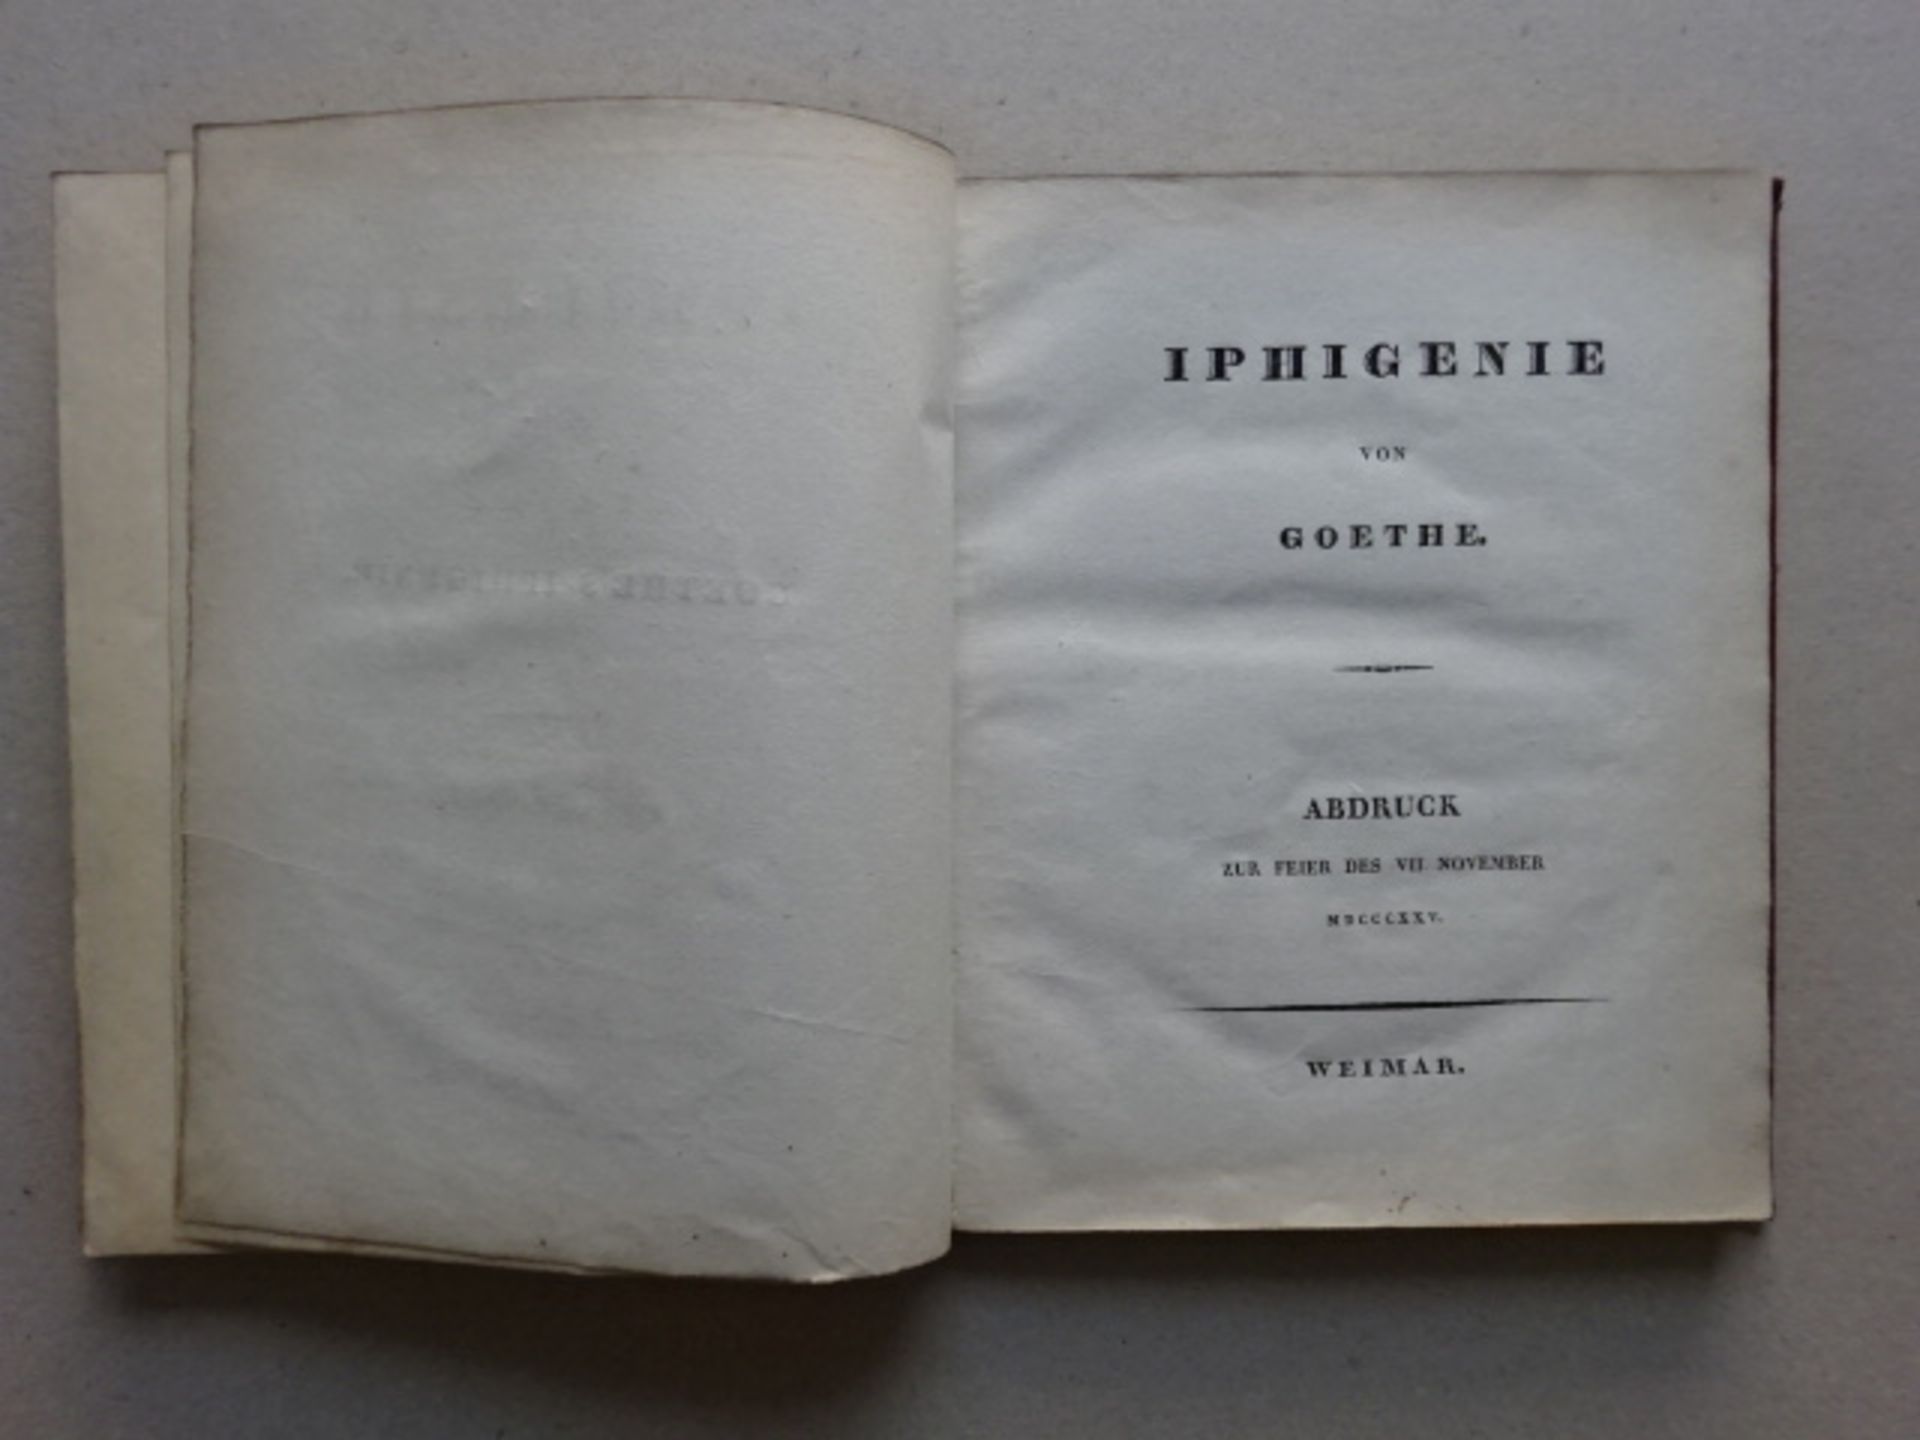 Goethe - Iphigenie - Image 4 of 6